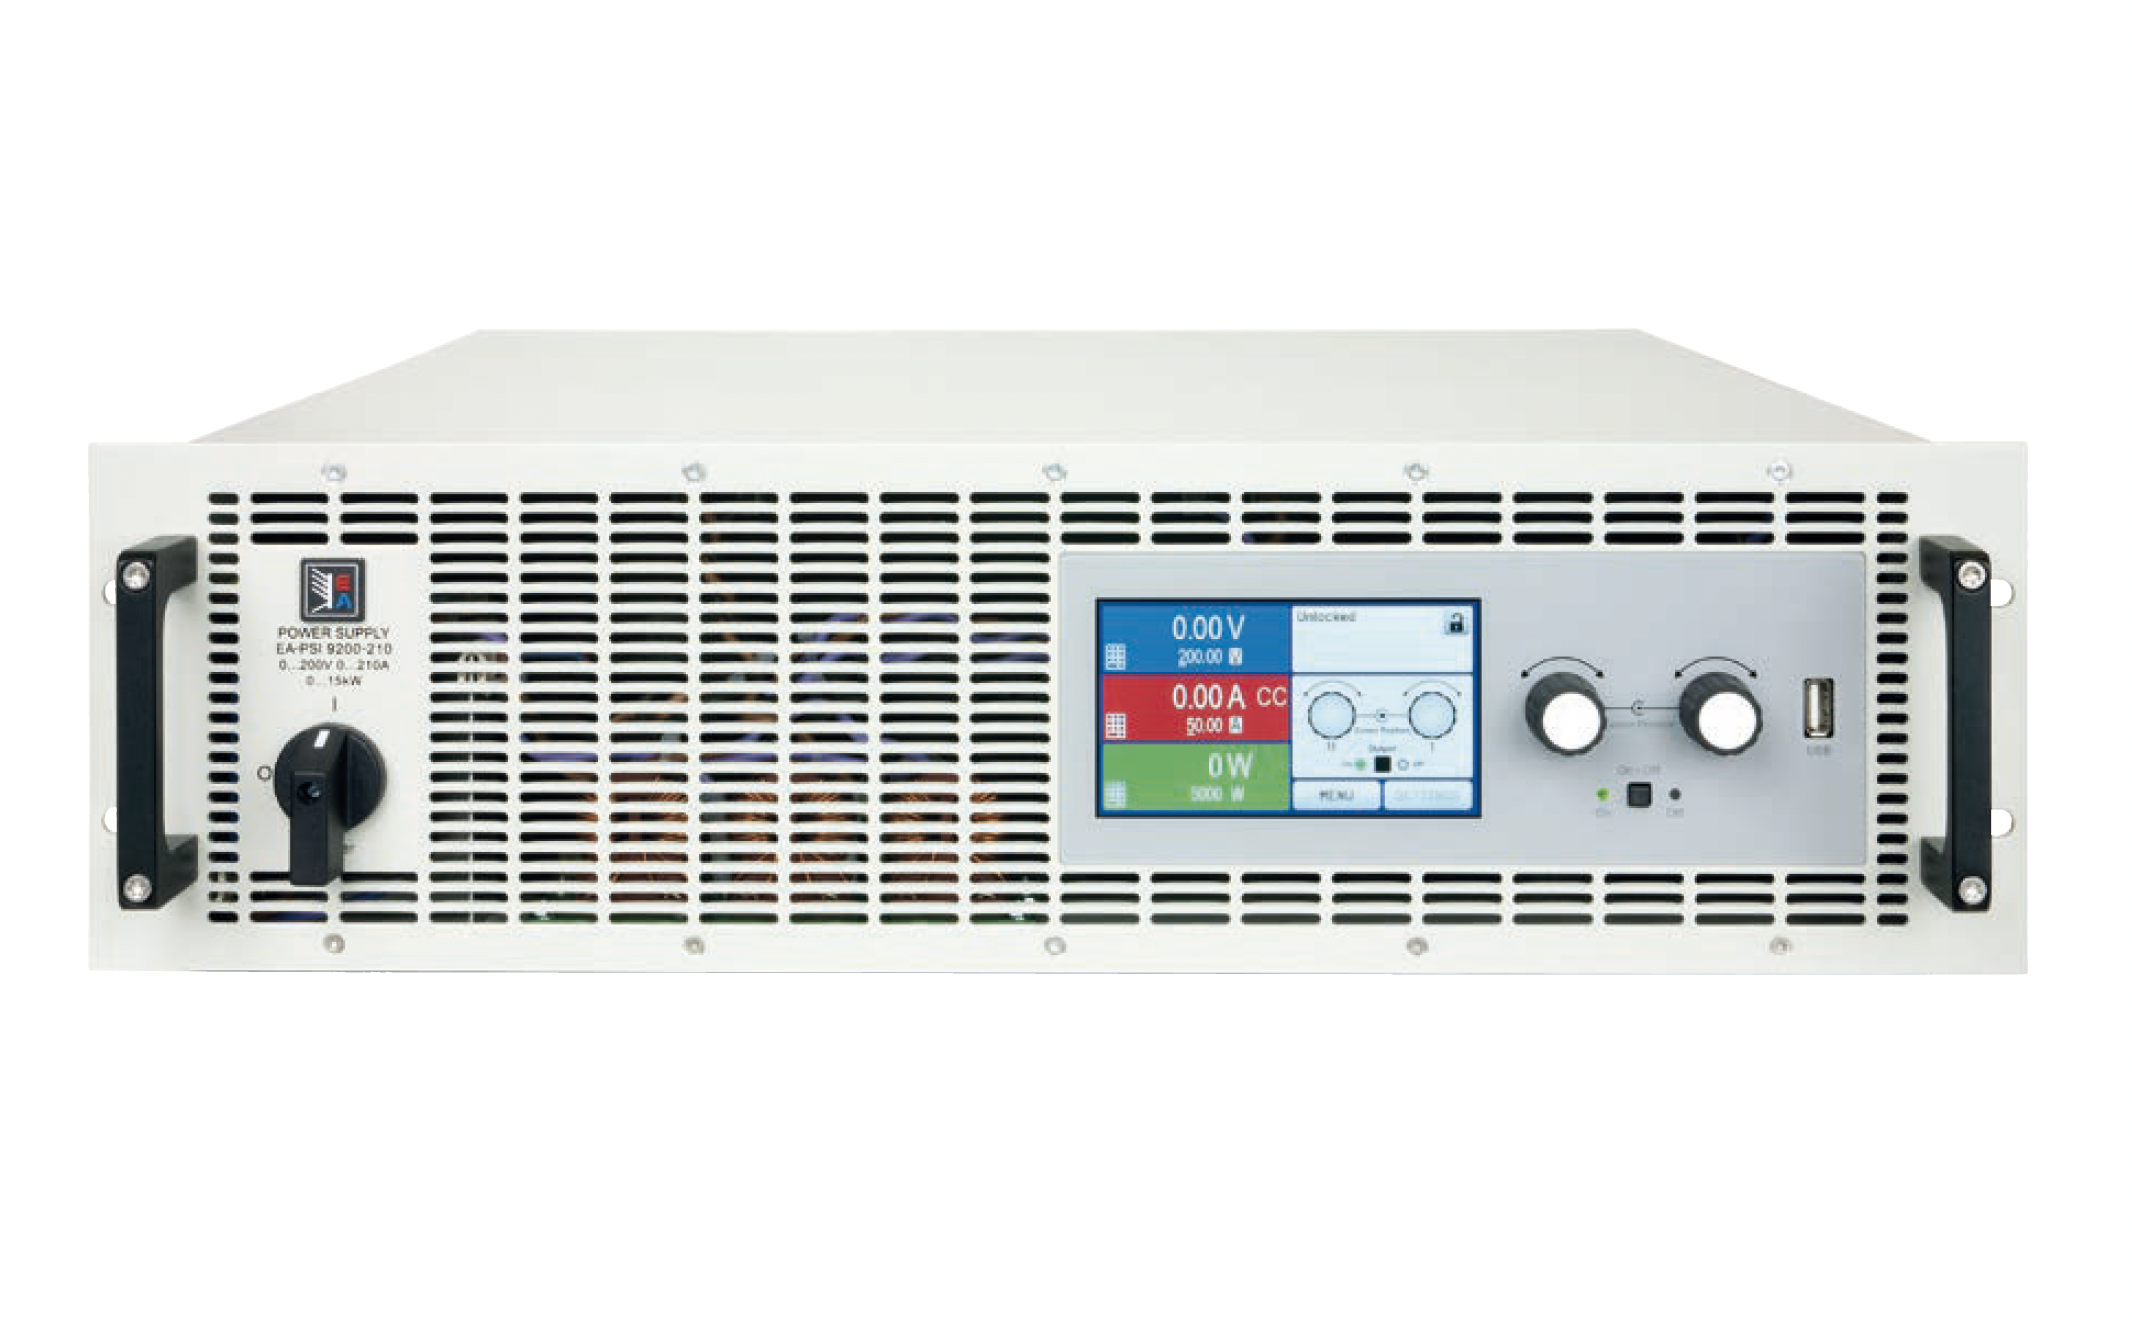 Программируемые источники питания
постоянного тока
 EA Elektro-Automatik серии PSI 9000
 с максимальной выходной мощностью
от 160 Вт до 640 Вт